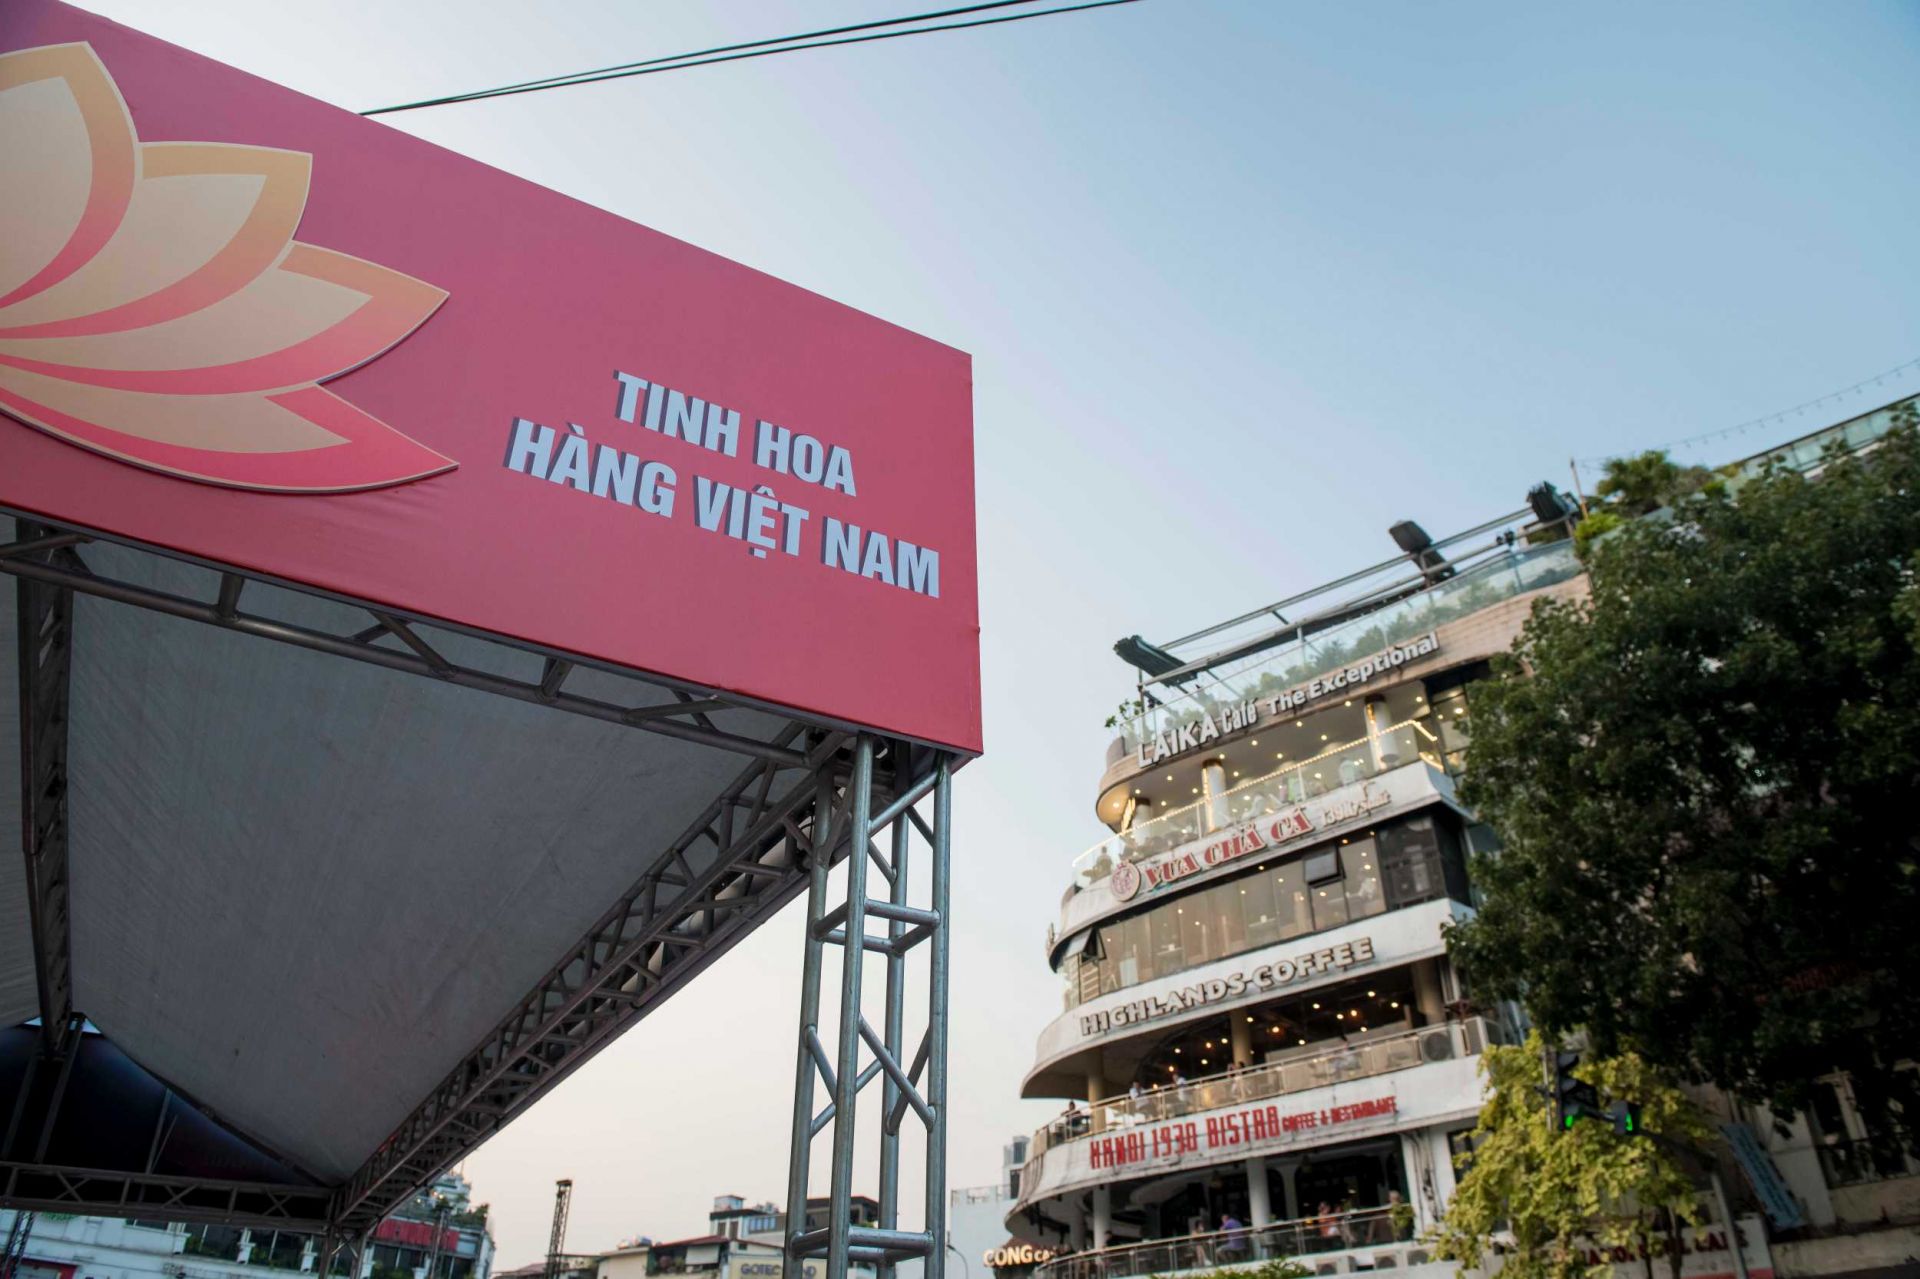 Sân khấu lớn diễn ra Lễ khai mạc Chương trình Nhận diện hàng Việt Nam năm 2022 và Lễ hội Tự hào hàng Việt Nam - Tinh hoa hàng Việt Nam đang dần hoàn thiện